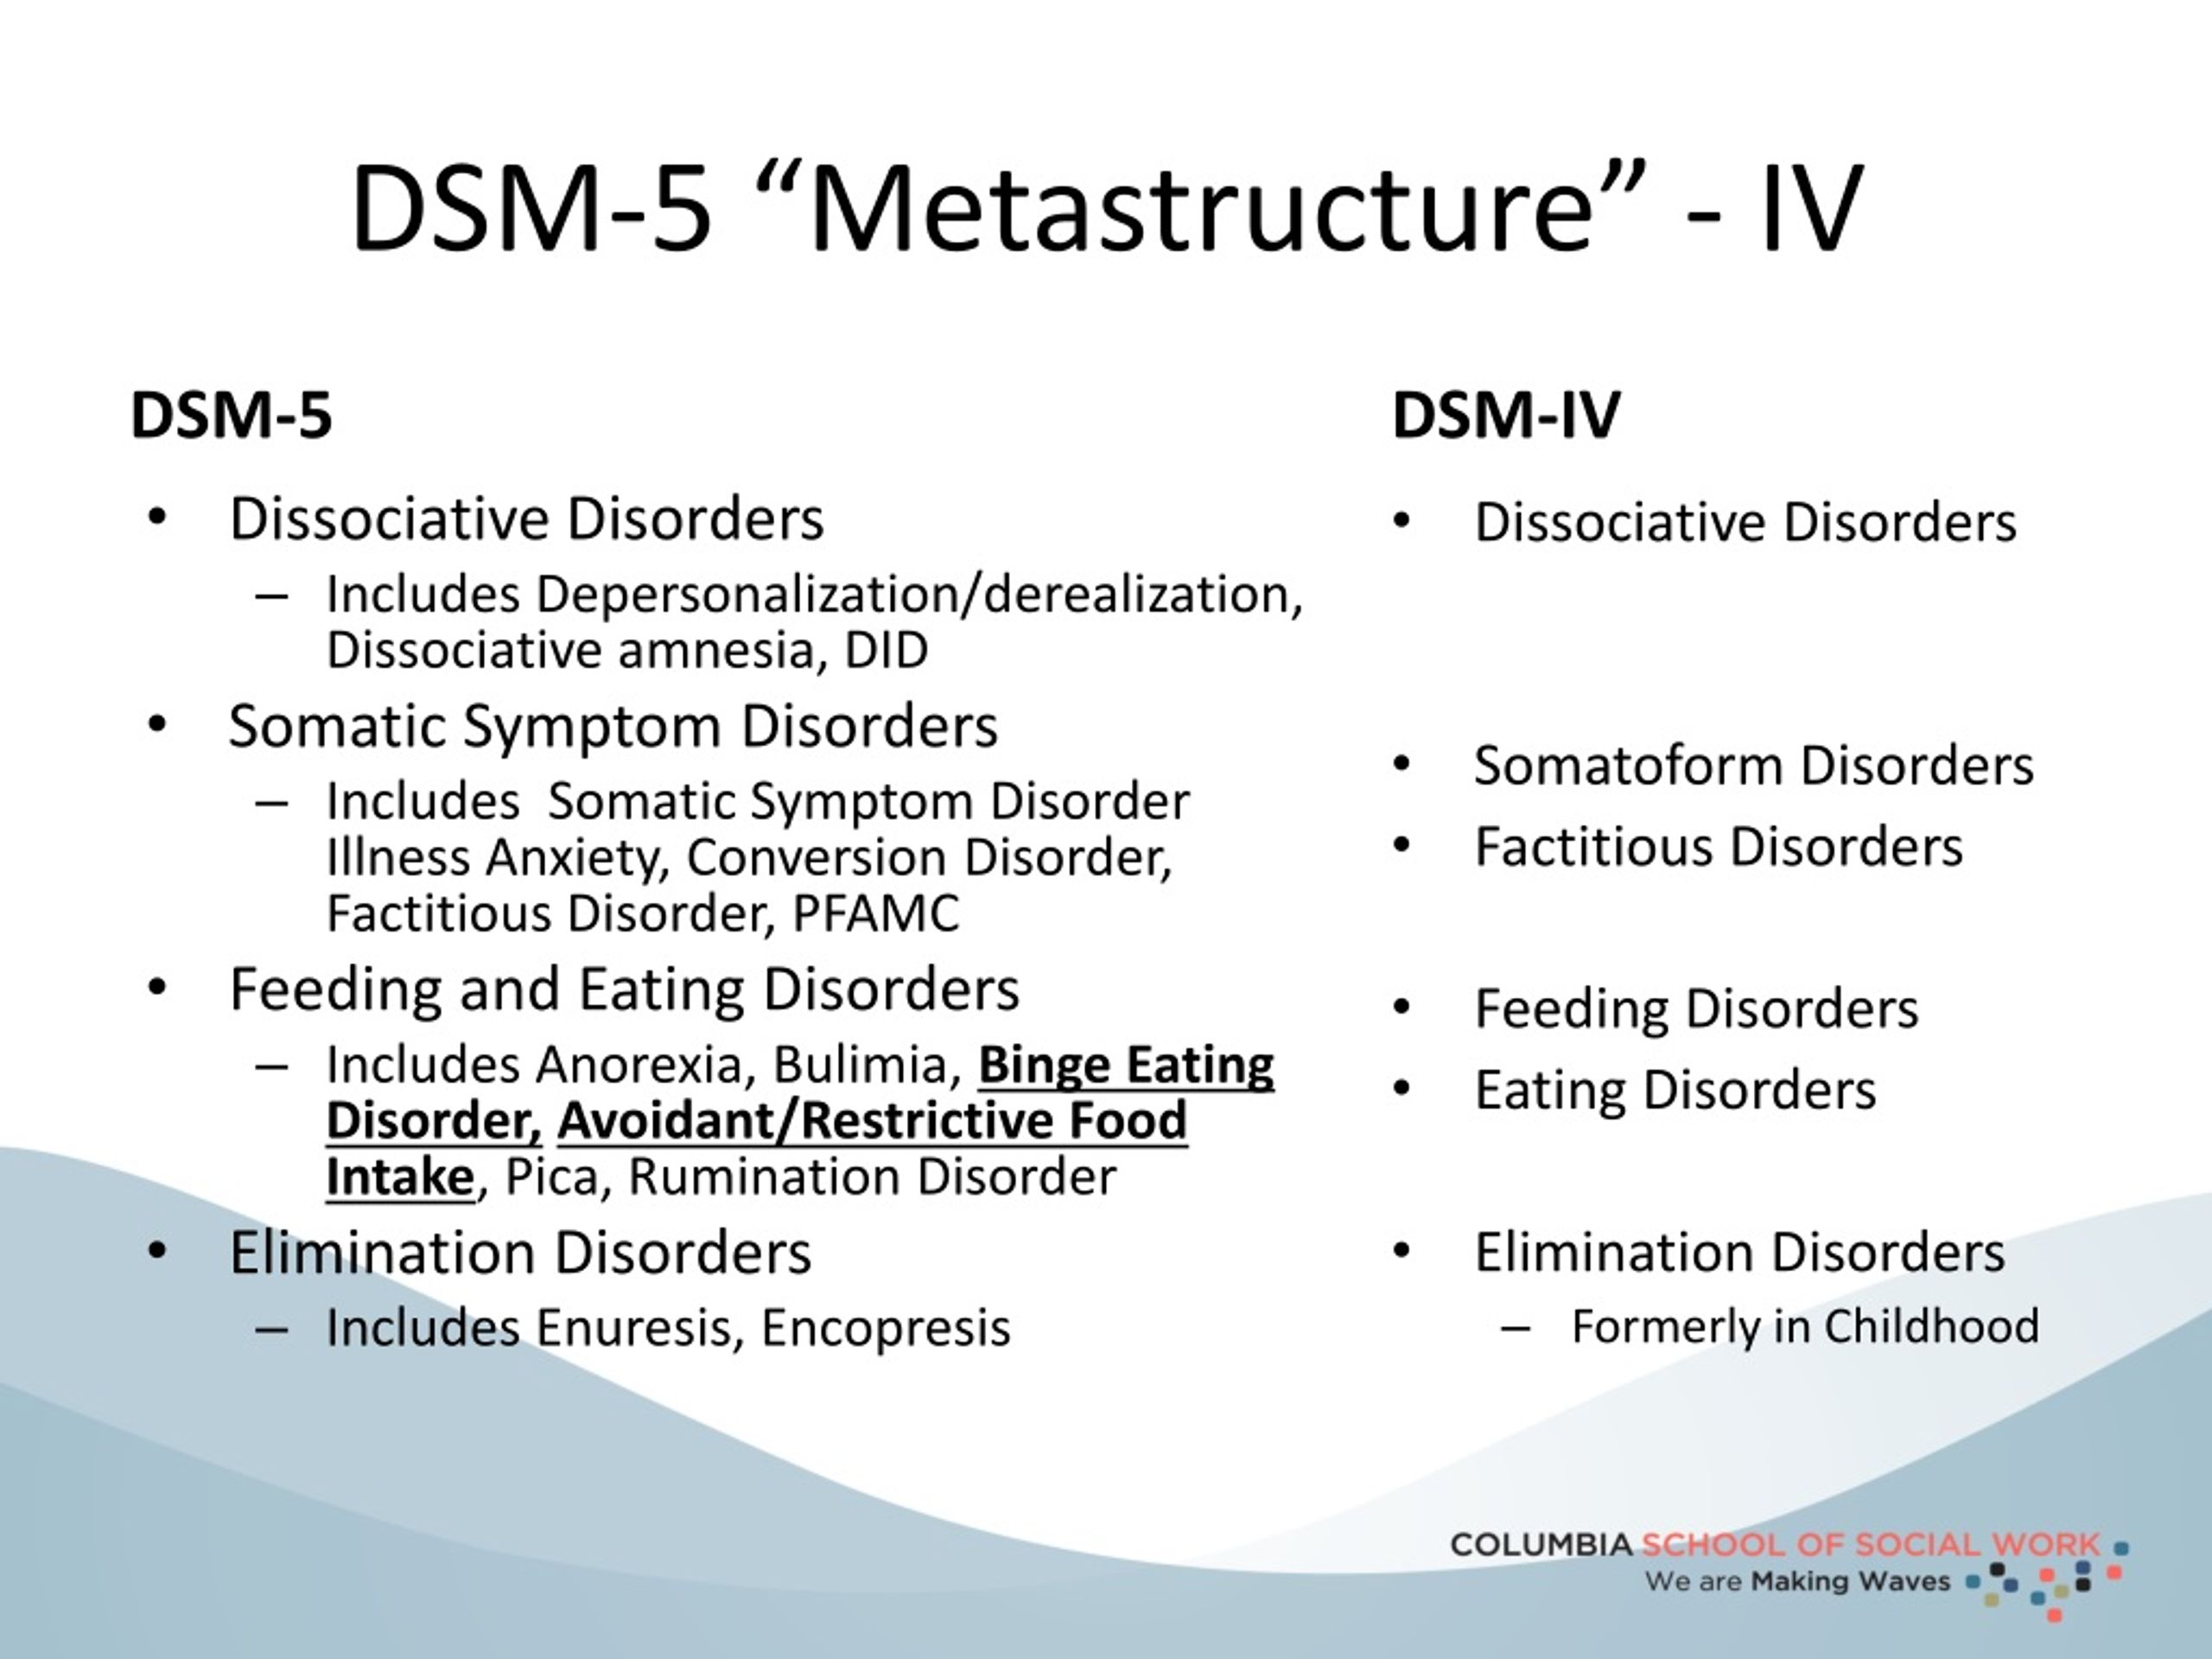 dsm 5 metastructure iv.